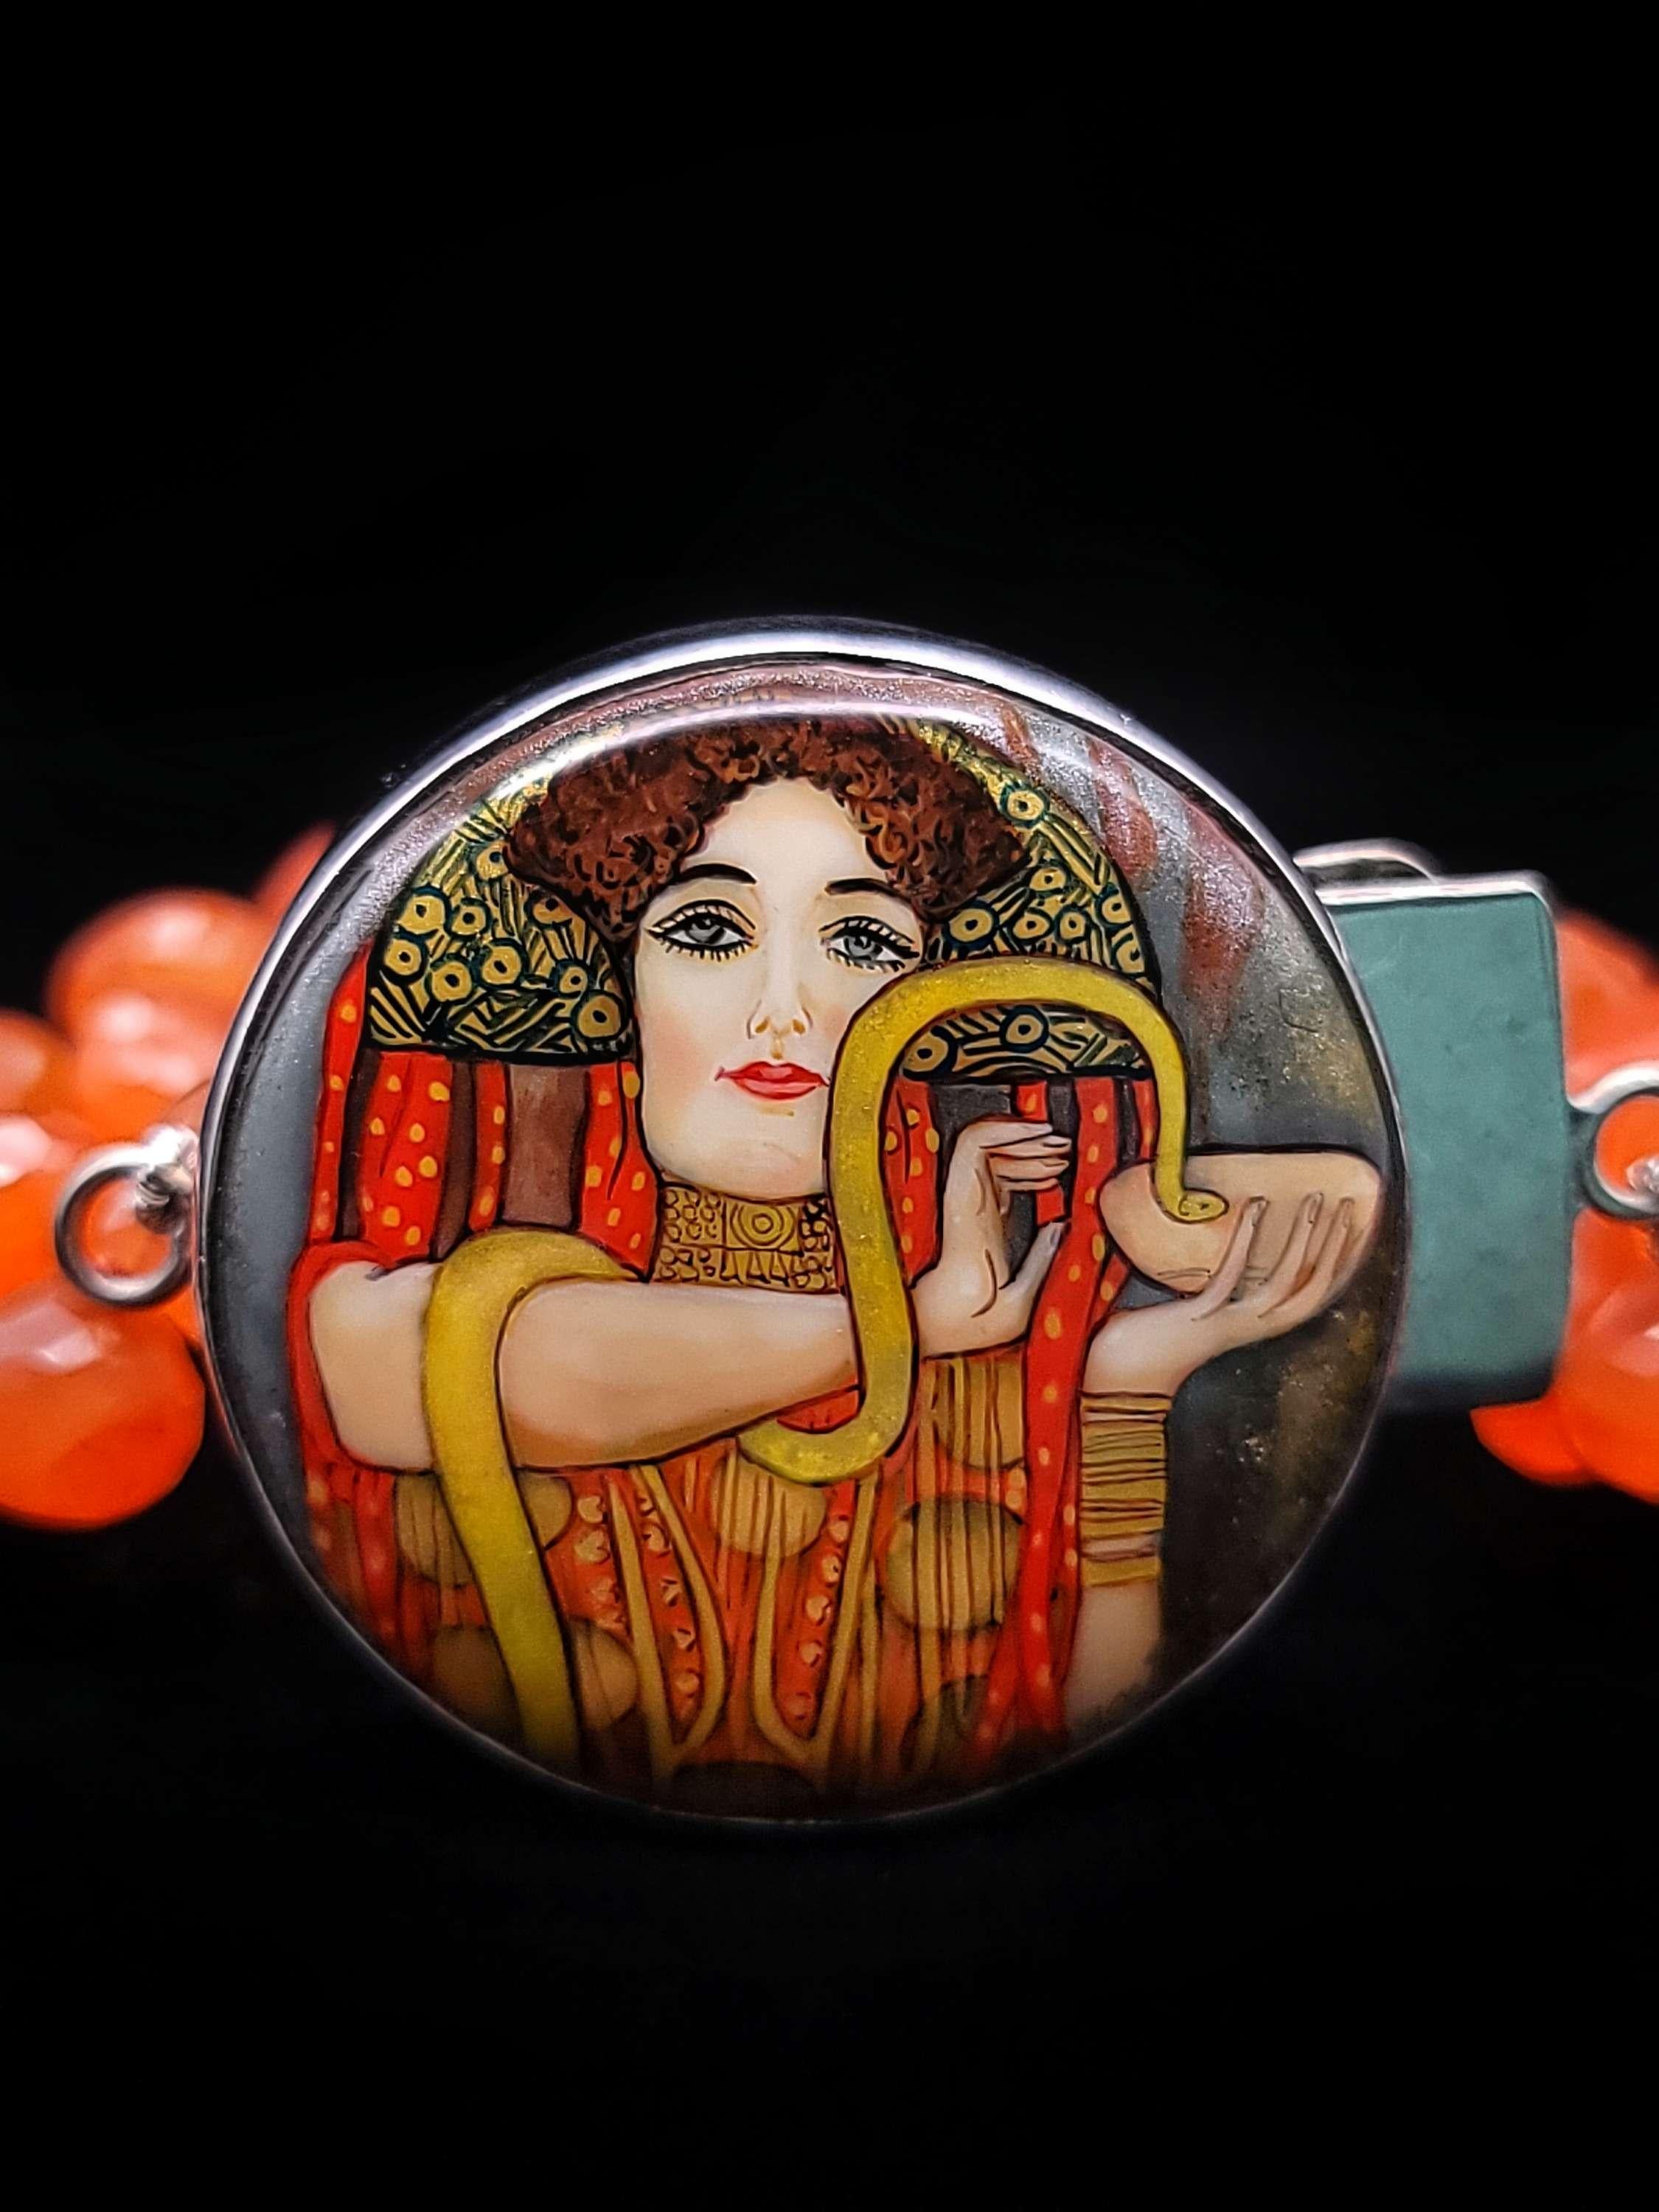 Ce bracelet unique en son genre, conçu par Elaine Silverstein, est une œuvre d'art étonnante qui met en valeur la beauté et le savoir-faire des miniaturistes russes. La pièce maîtresse du bracelet est une reproduction soigneusement réduite de